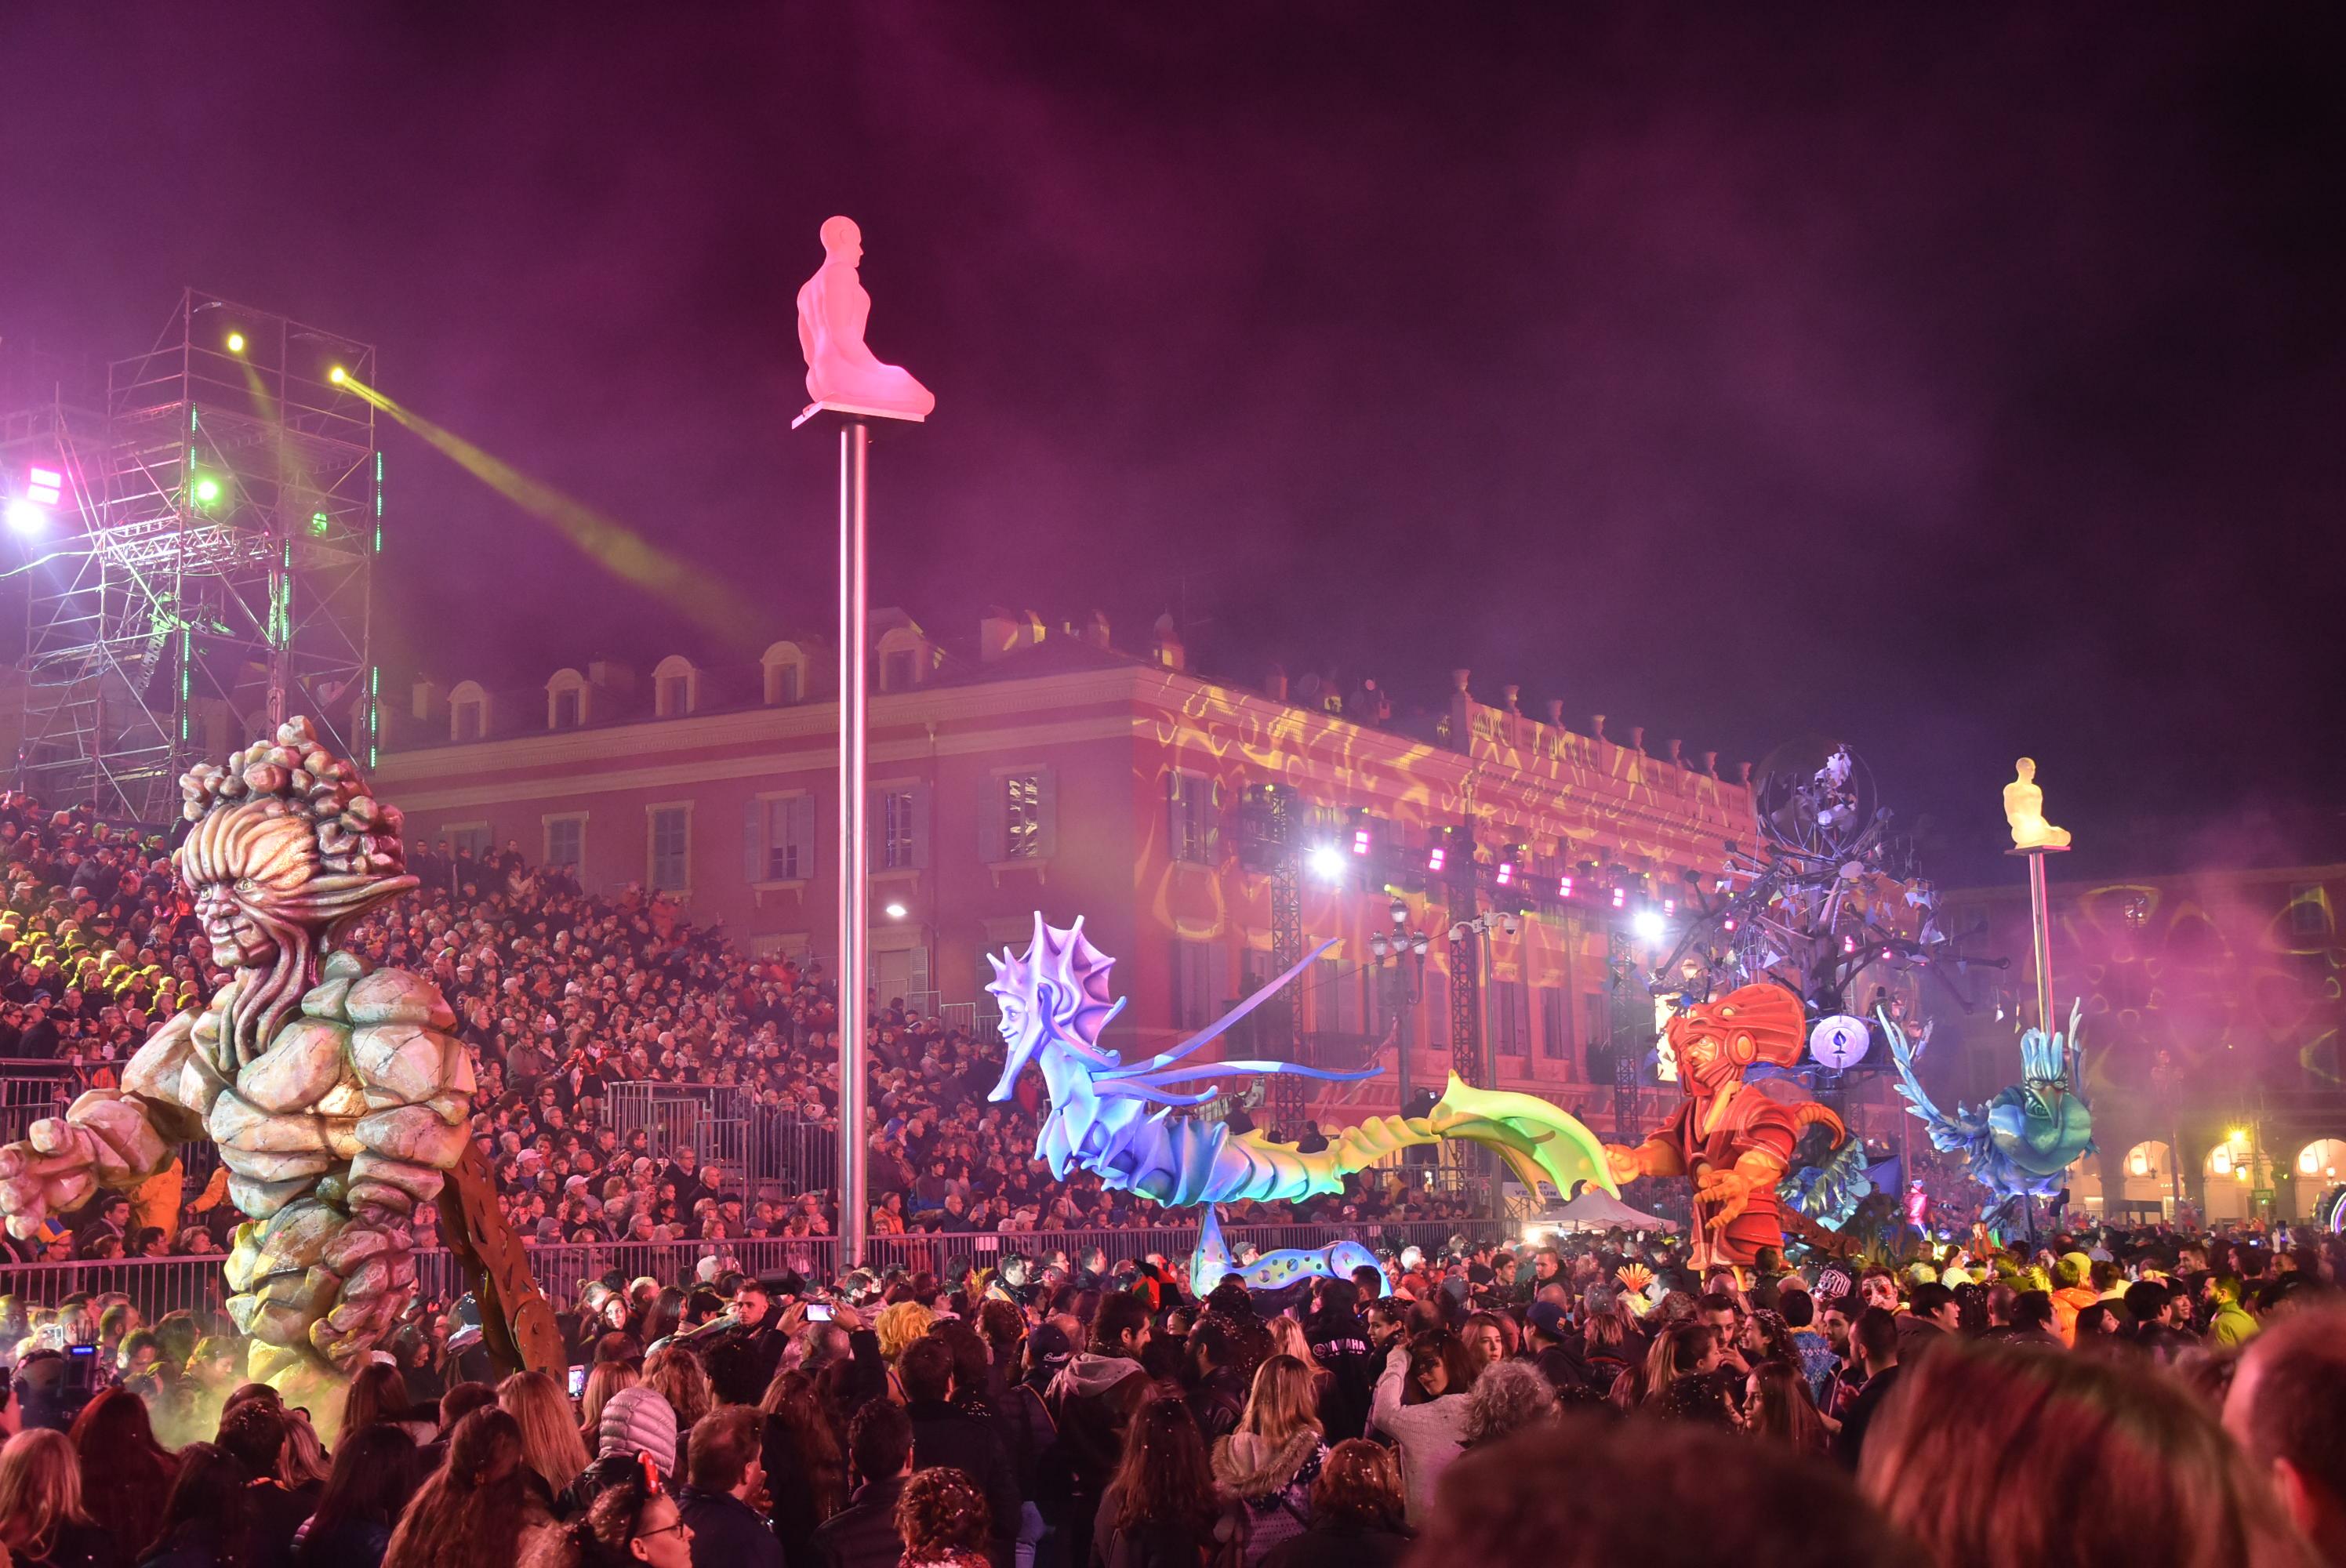 Réservez votre hôtel au cœur du Carnaval de Nice 2019 !